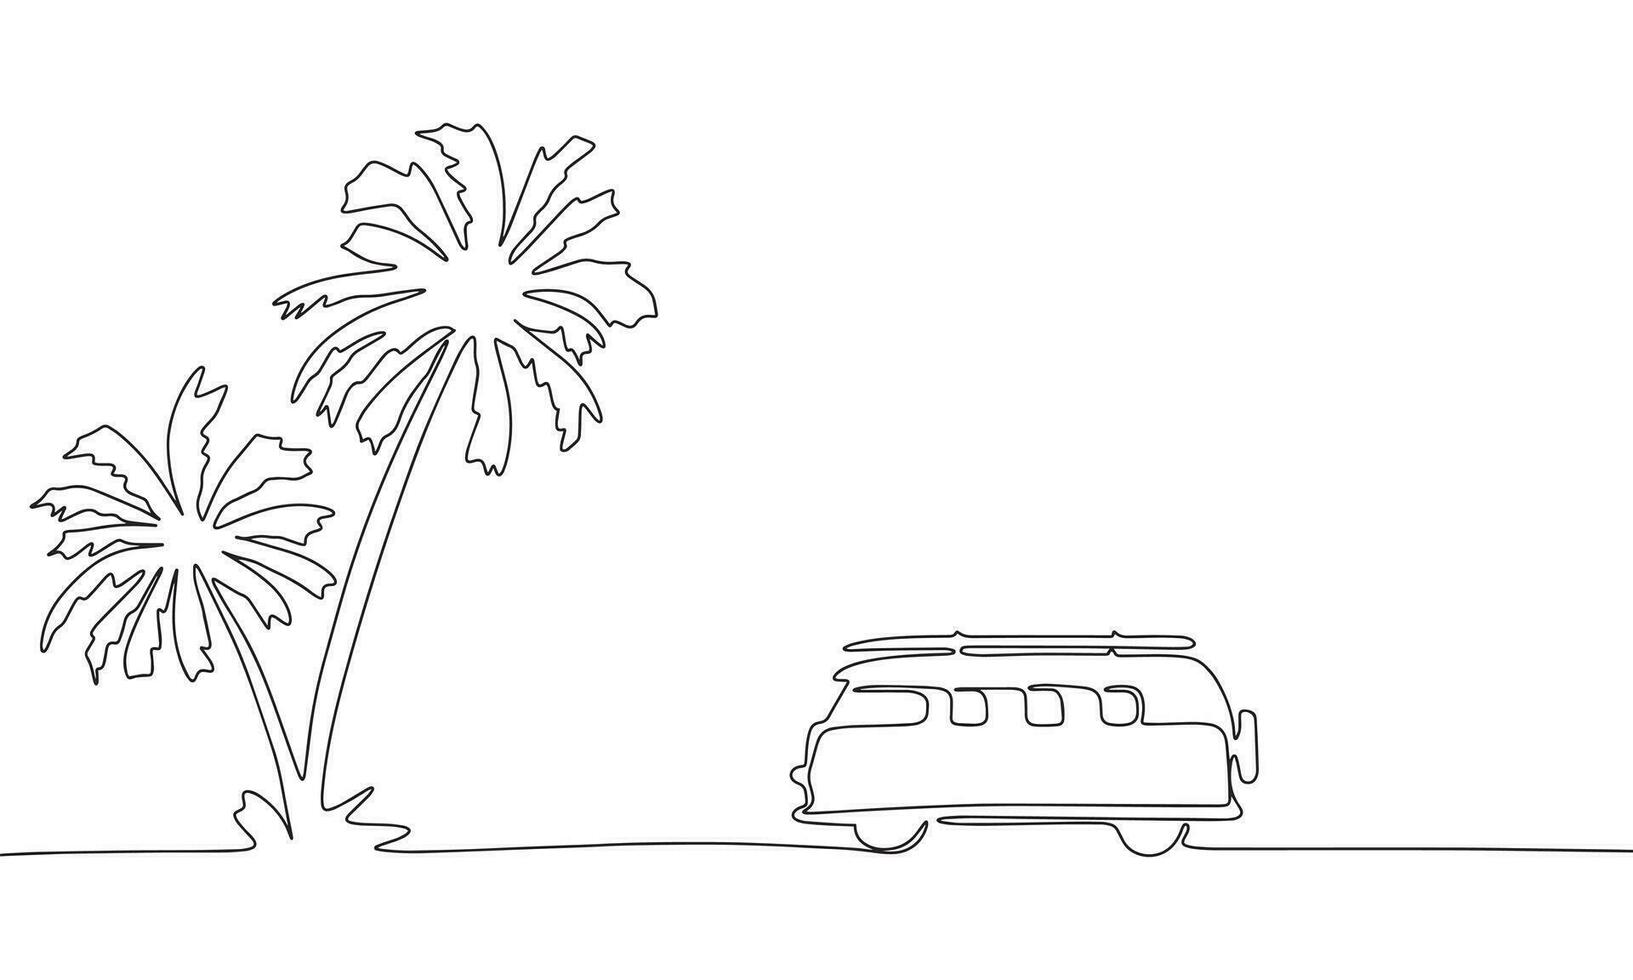 viaje camioneta en continuo línea Arte dibujo estilo. silueta de palma árbol y camioneta. negro lineal bosquejo aislado en blanco antecedentes. vector ilustración